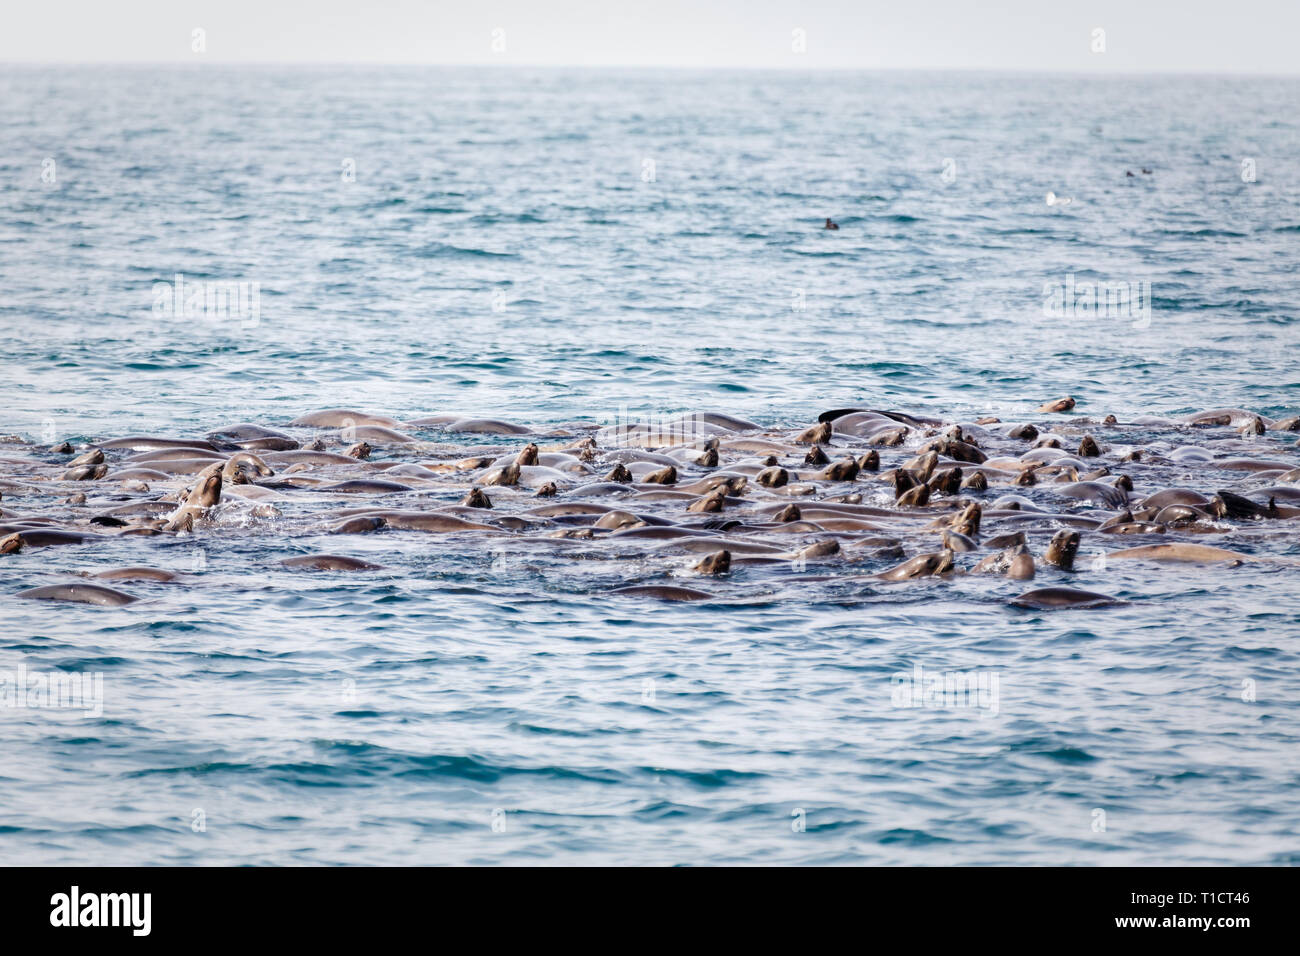 Libre d'un immense groupe de lions de mer la messe ensemble dans l'océan au large des côtes de Californie Banque D'Images